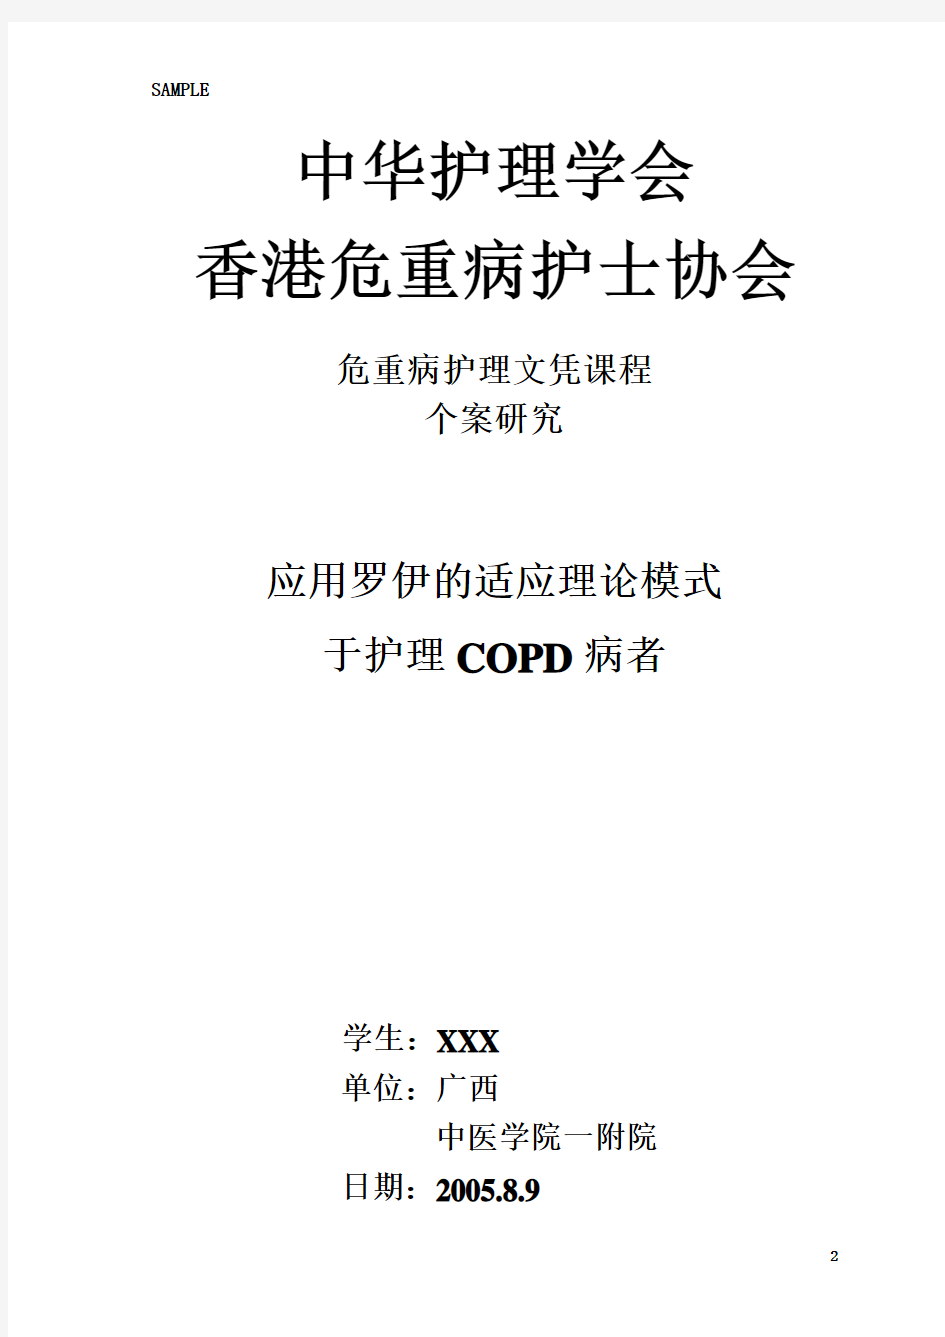 COPD应用罗伊的适应理论的护理个案[1]